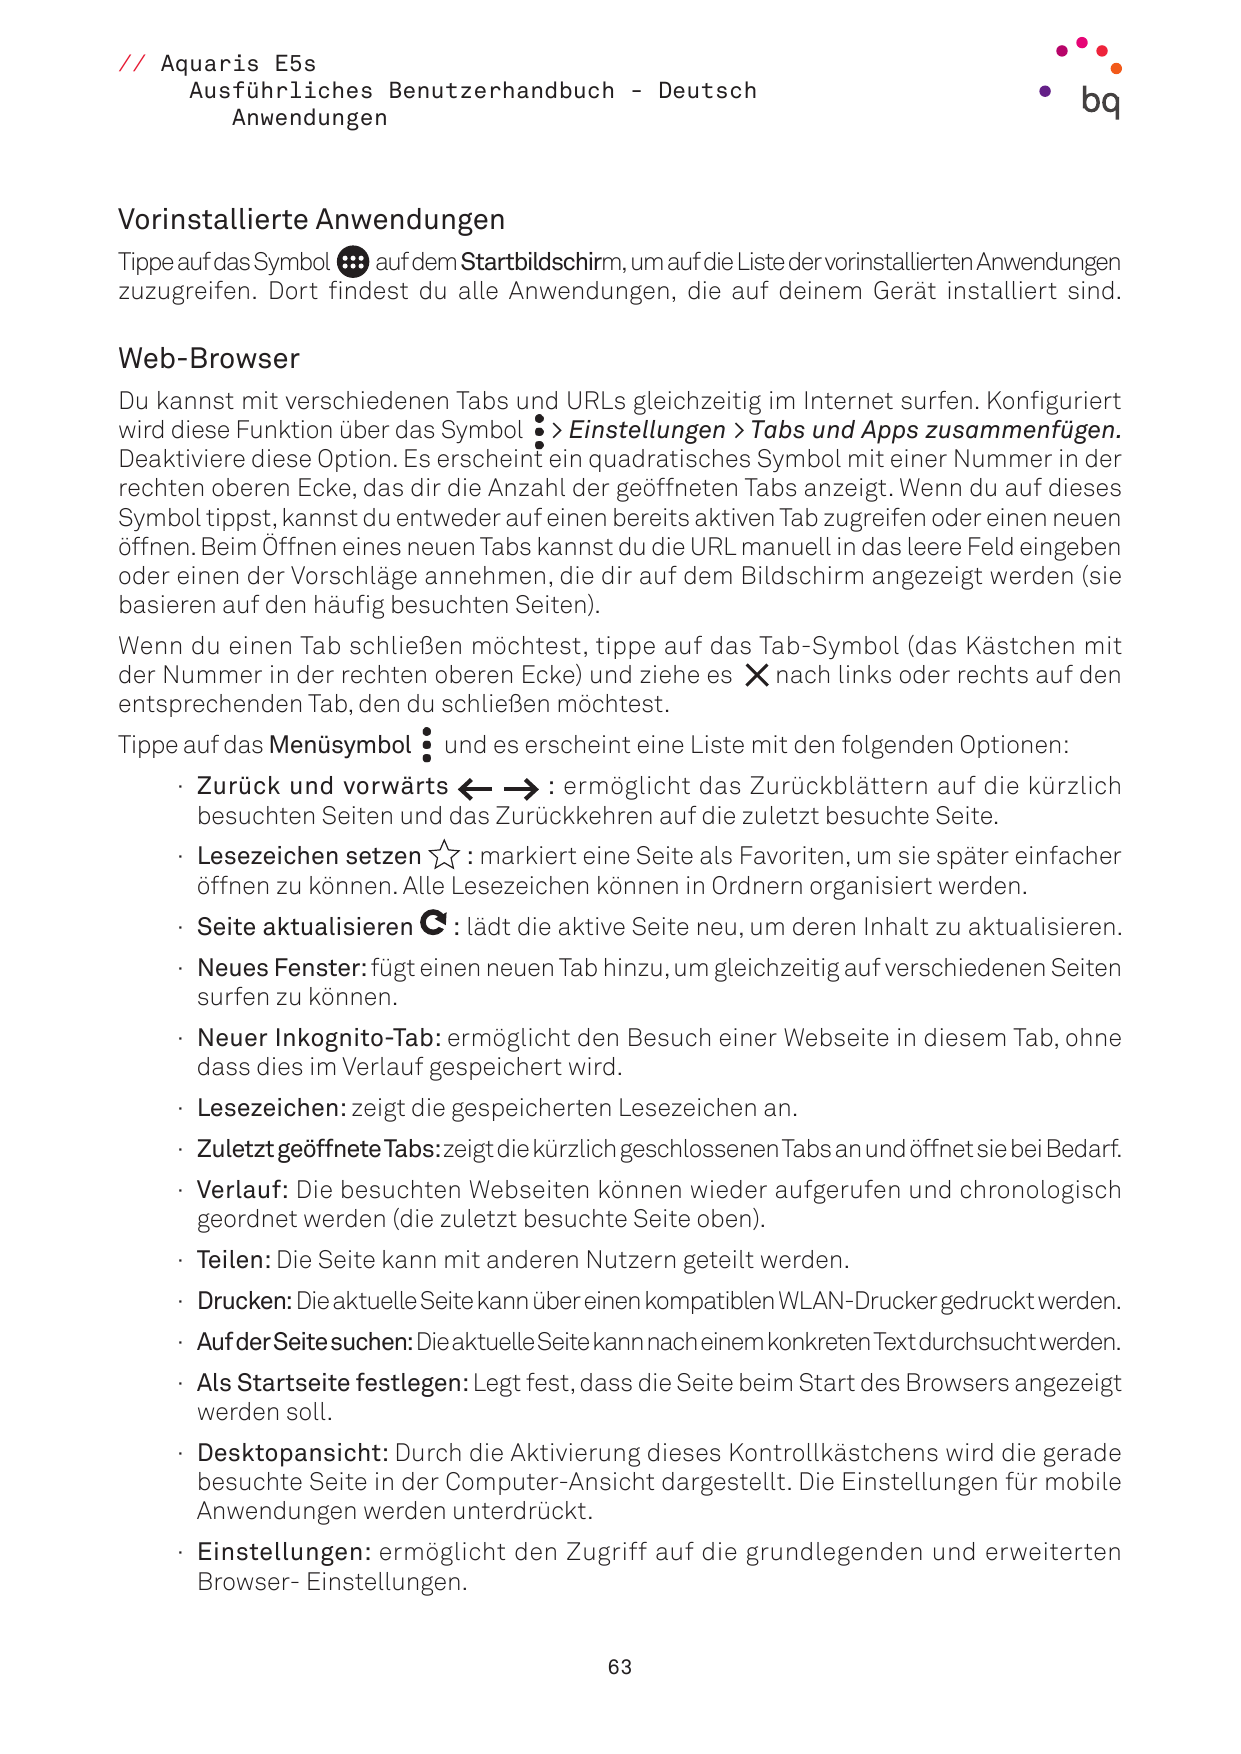 // Aquaris E5sAusführliches Benutzerhandbuch - DeutschAnwendungenVorinstallierte AnwendungenTippe auf das Symbolauf dem Startbil